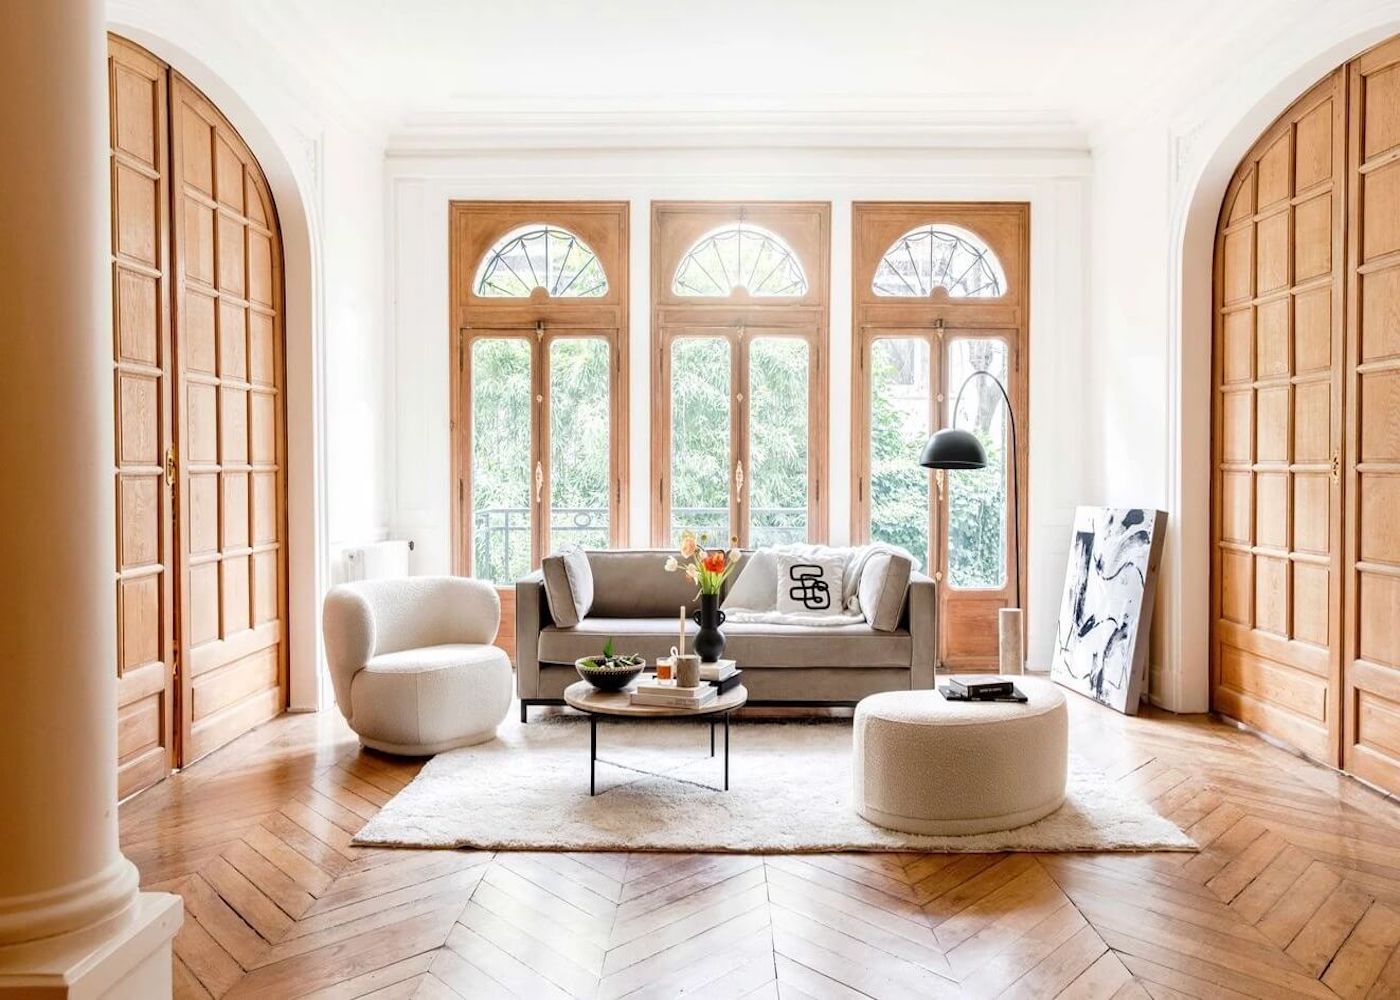 salon moderne chic deco elegante moulure parquet bois chevron tapis relief blanc